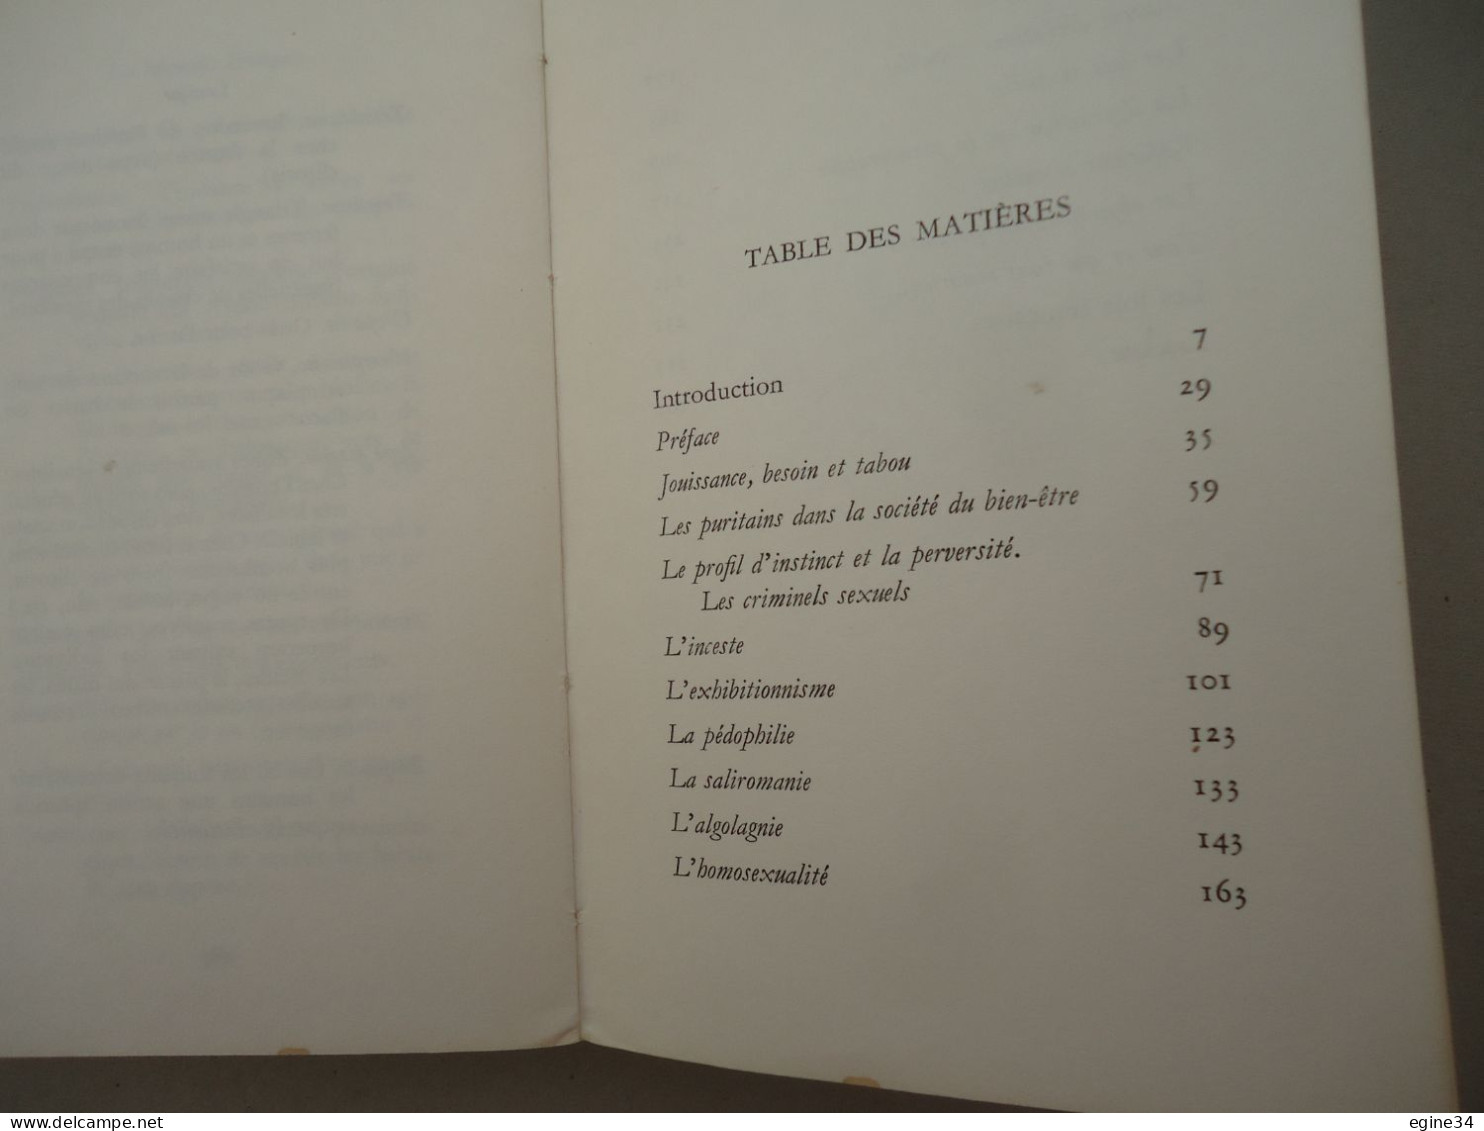 Editions Jean-Jacques  Pauvert - Dr Lars Ullerstam - Les Minorités Erotiques - 1965 - Soziologie